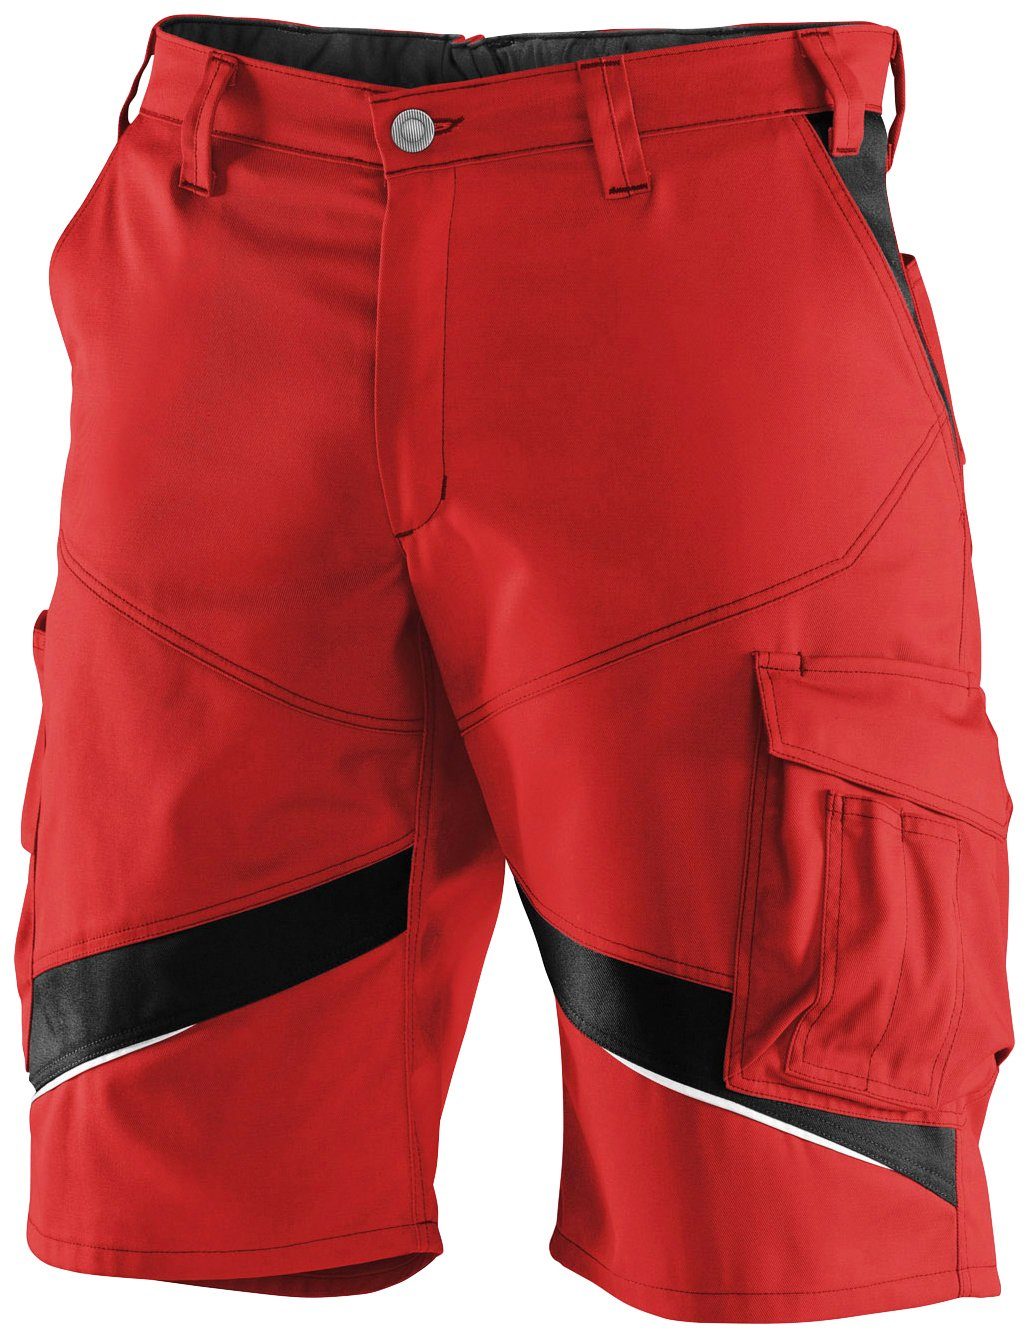 Kübler Arbeitsshorts ACTIVIQ ergonomisch rot-schwarz | Shorts